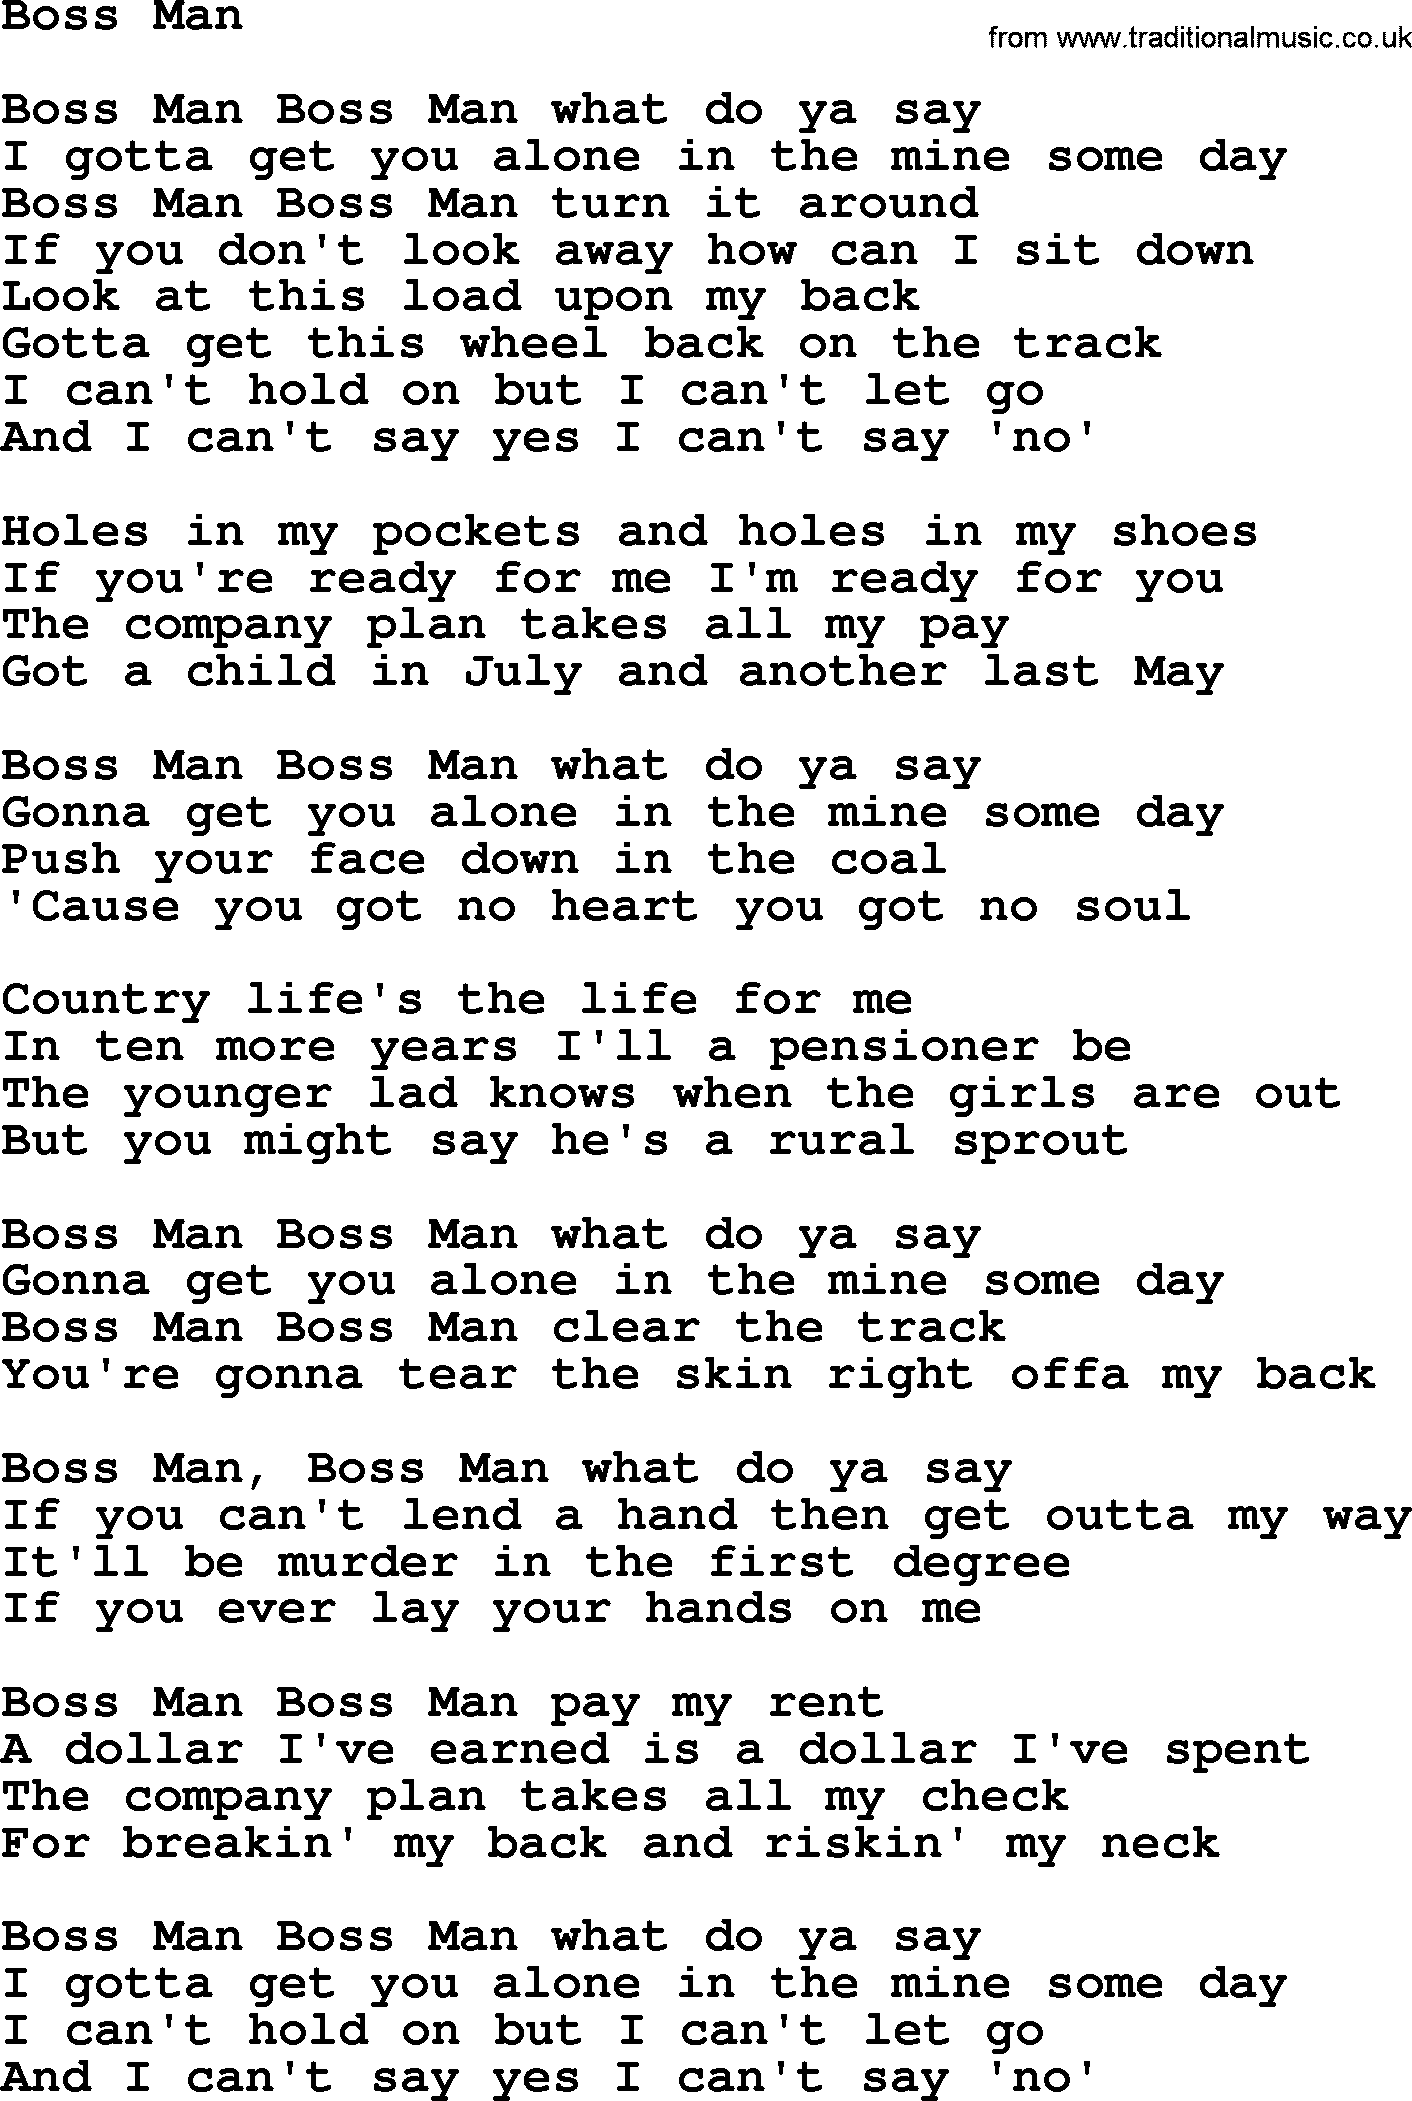 Gordon Lightfoot song Boss Man, lyrics